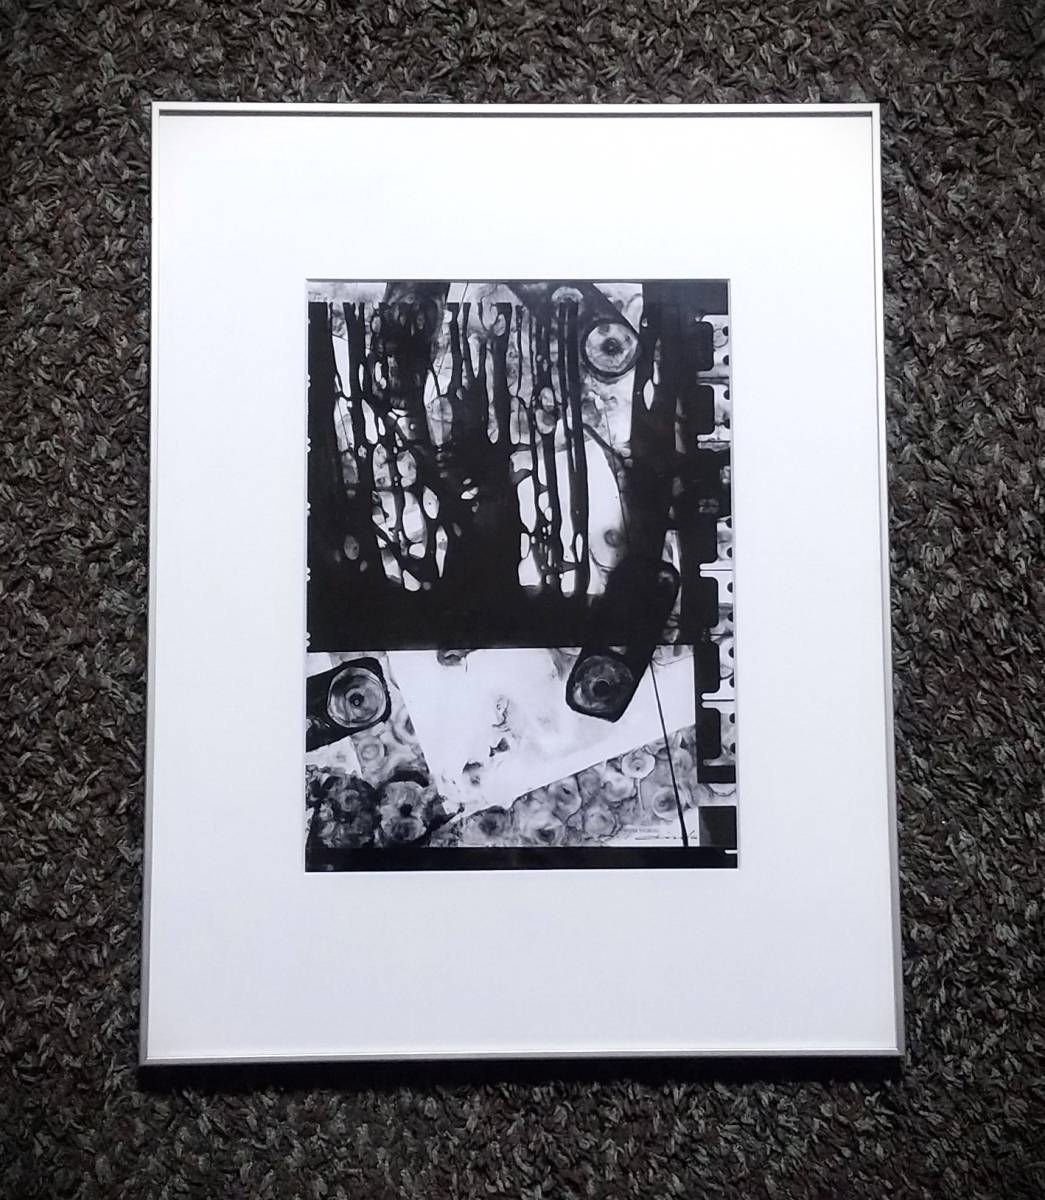 广田正男 Note-201210-07 混合媒体, 2012年生产, 其中的一种, 亲笔签名, 镶框【正品保证】广田正男, 京都市立艺术大学, 艺术品, 绘画, 其他的